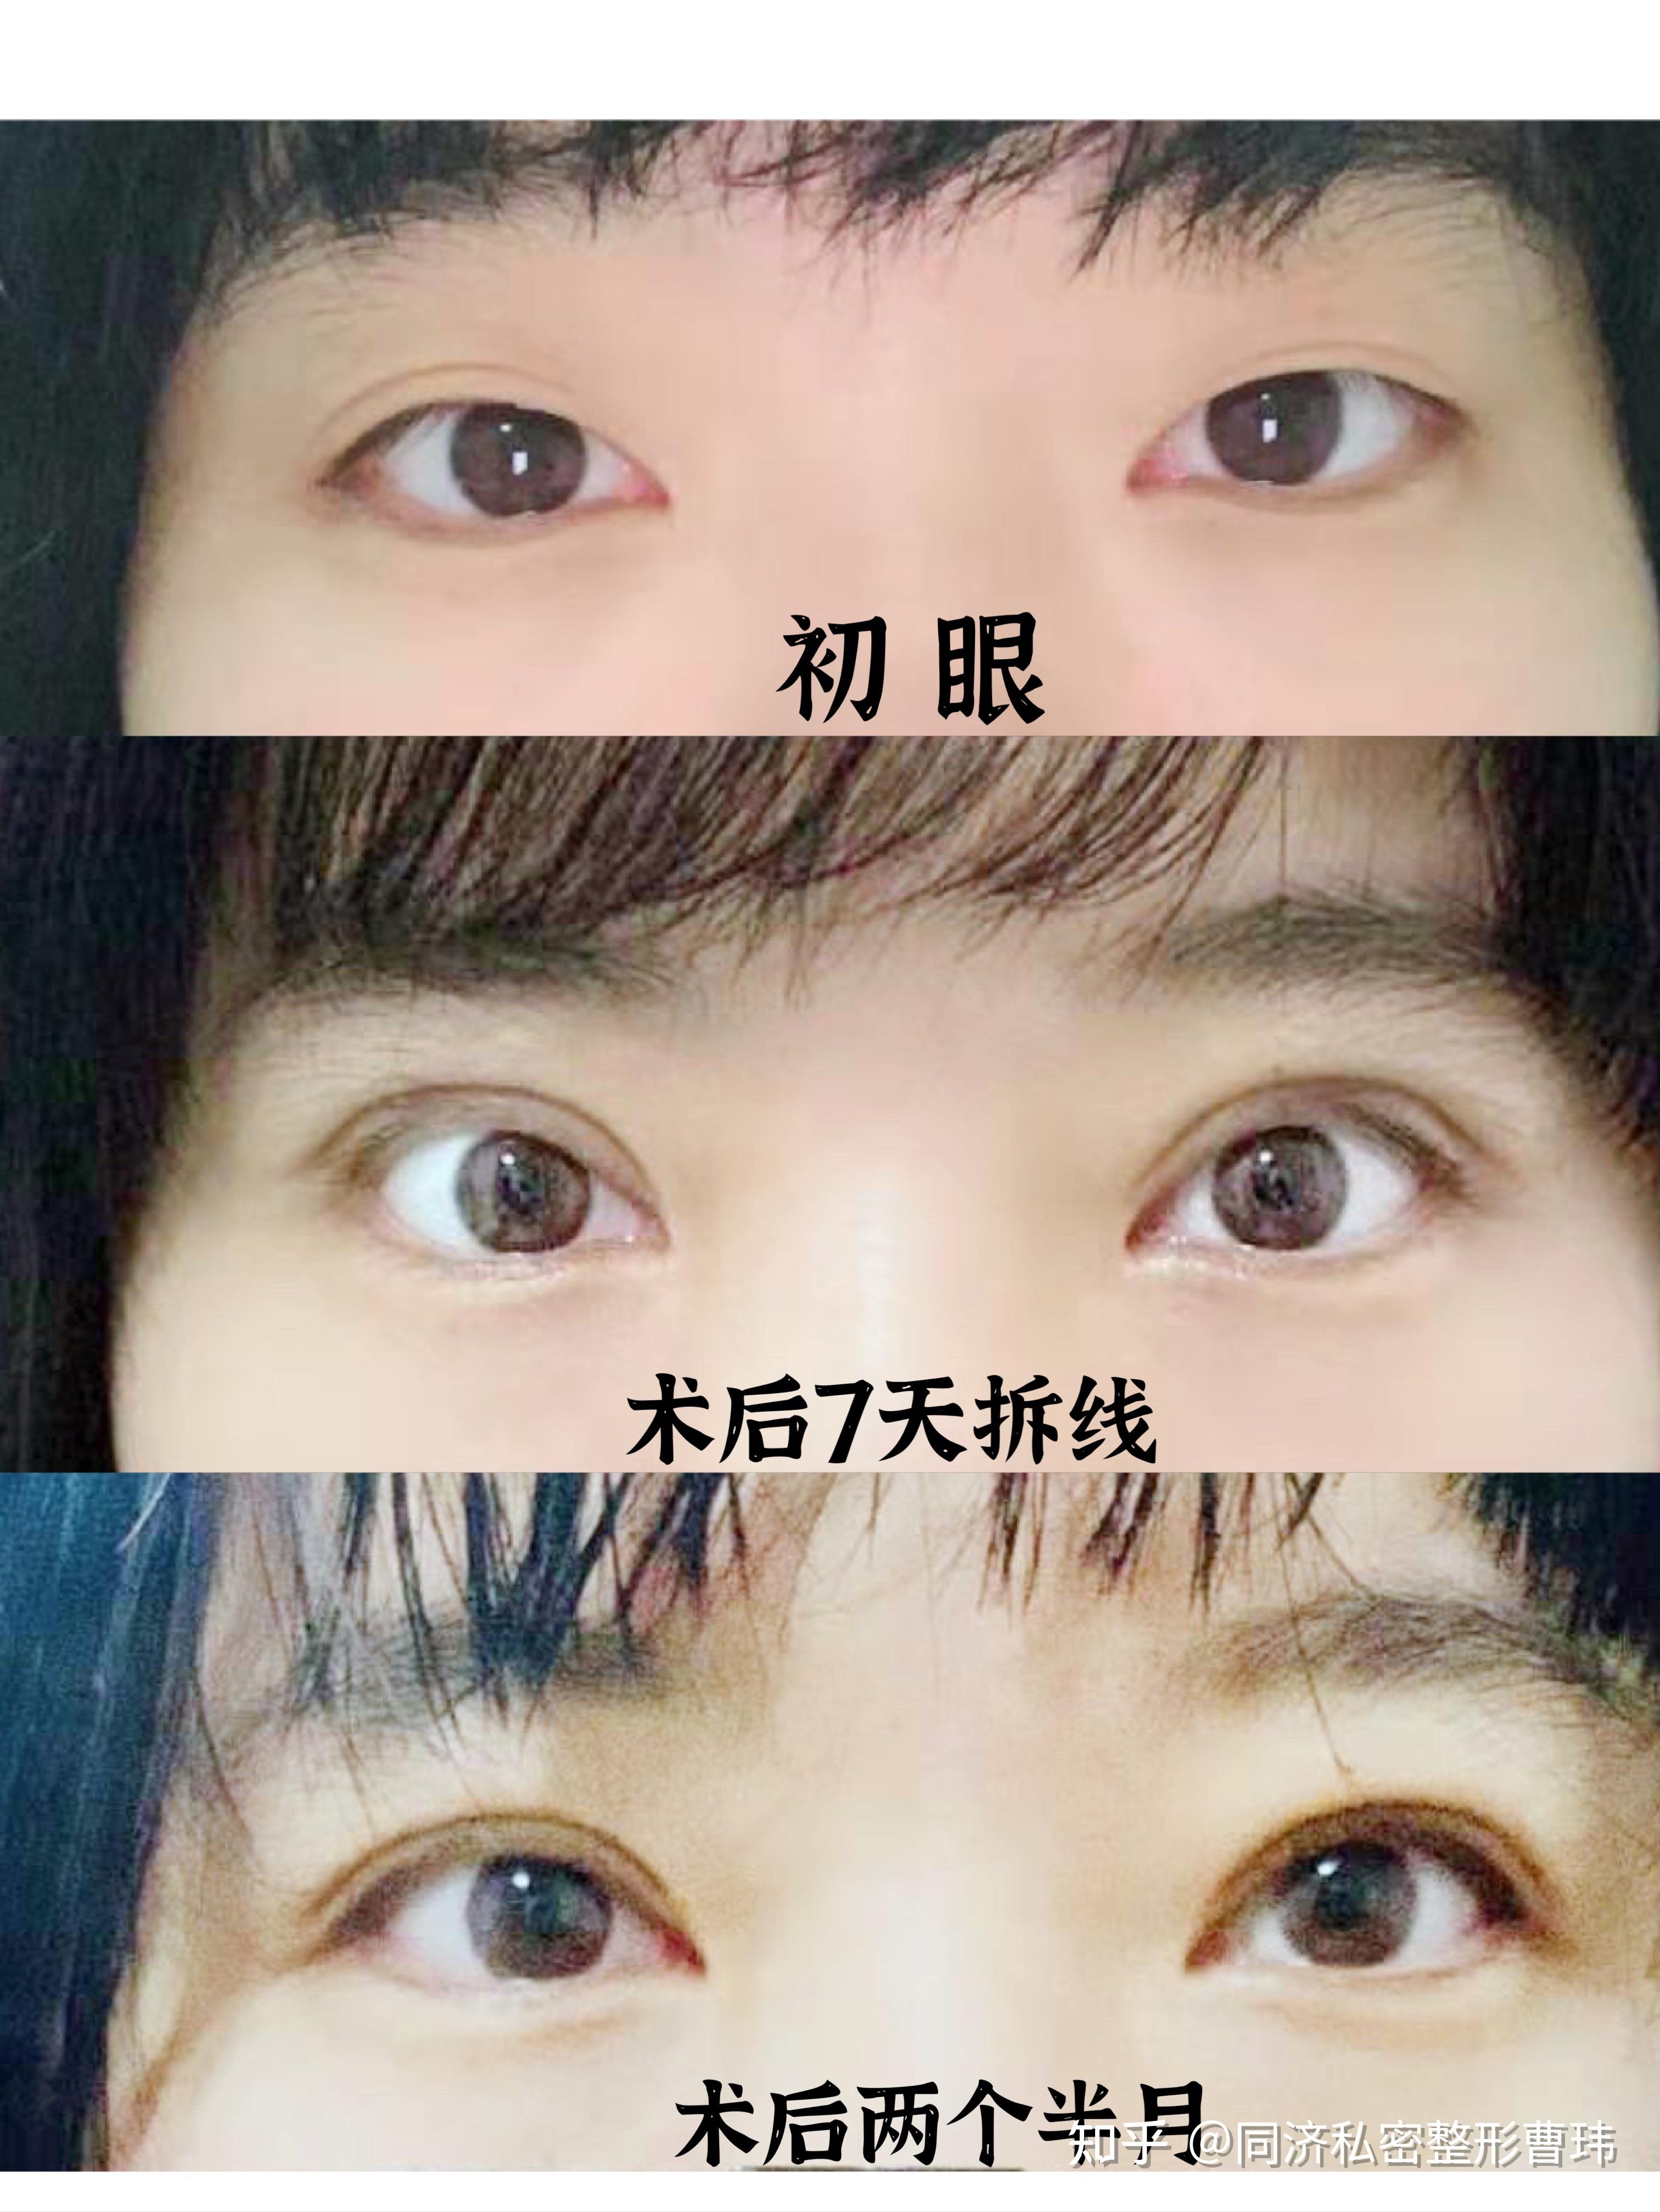 青岛5S双眼皮真实案例分享，术前术后效果对比 - 青岛新闻网